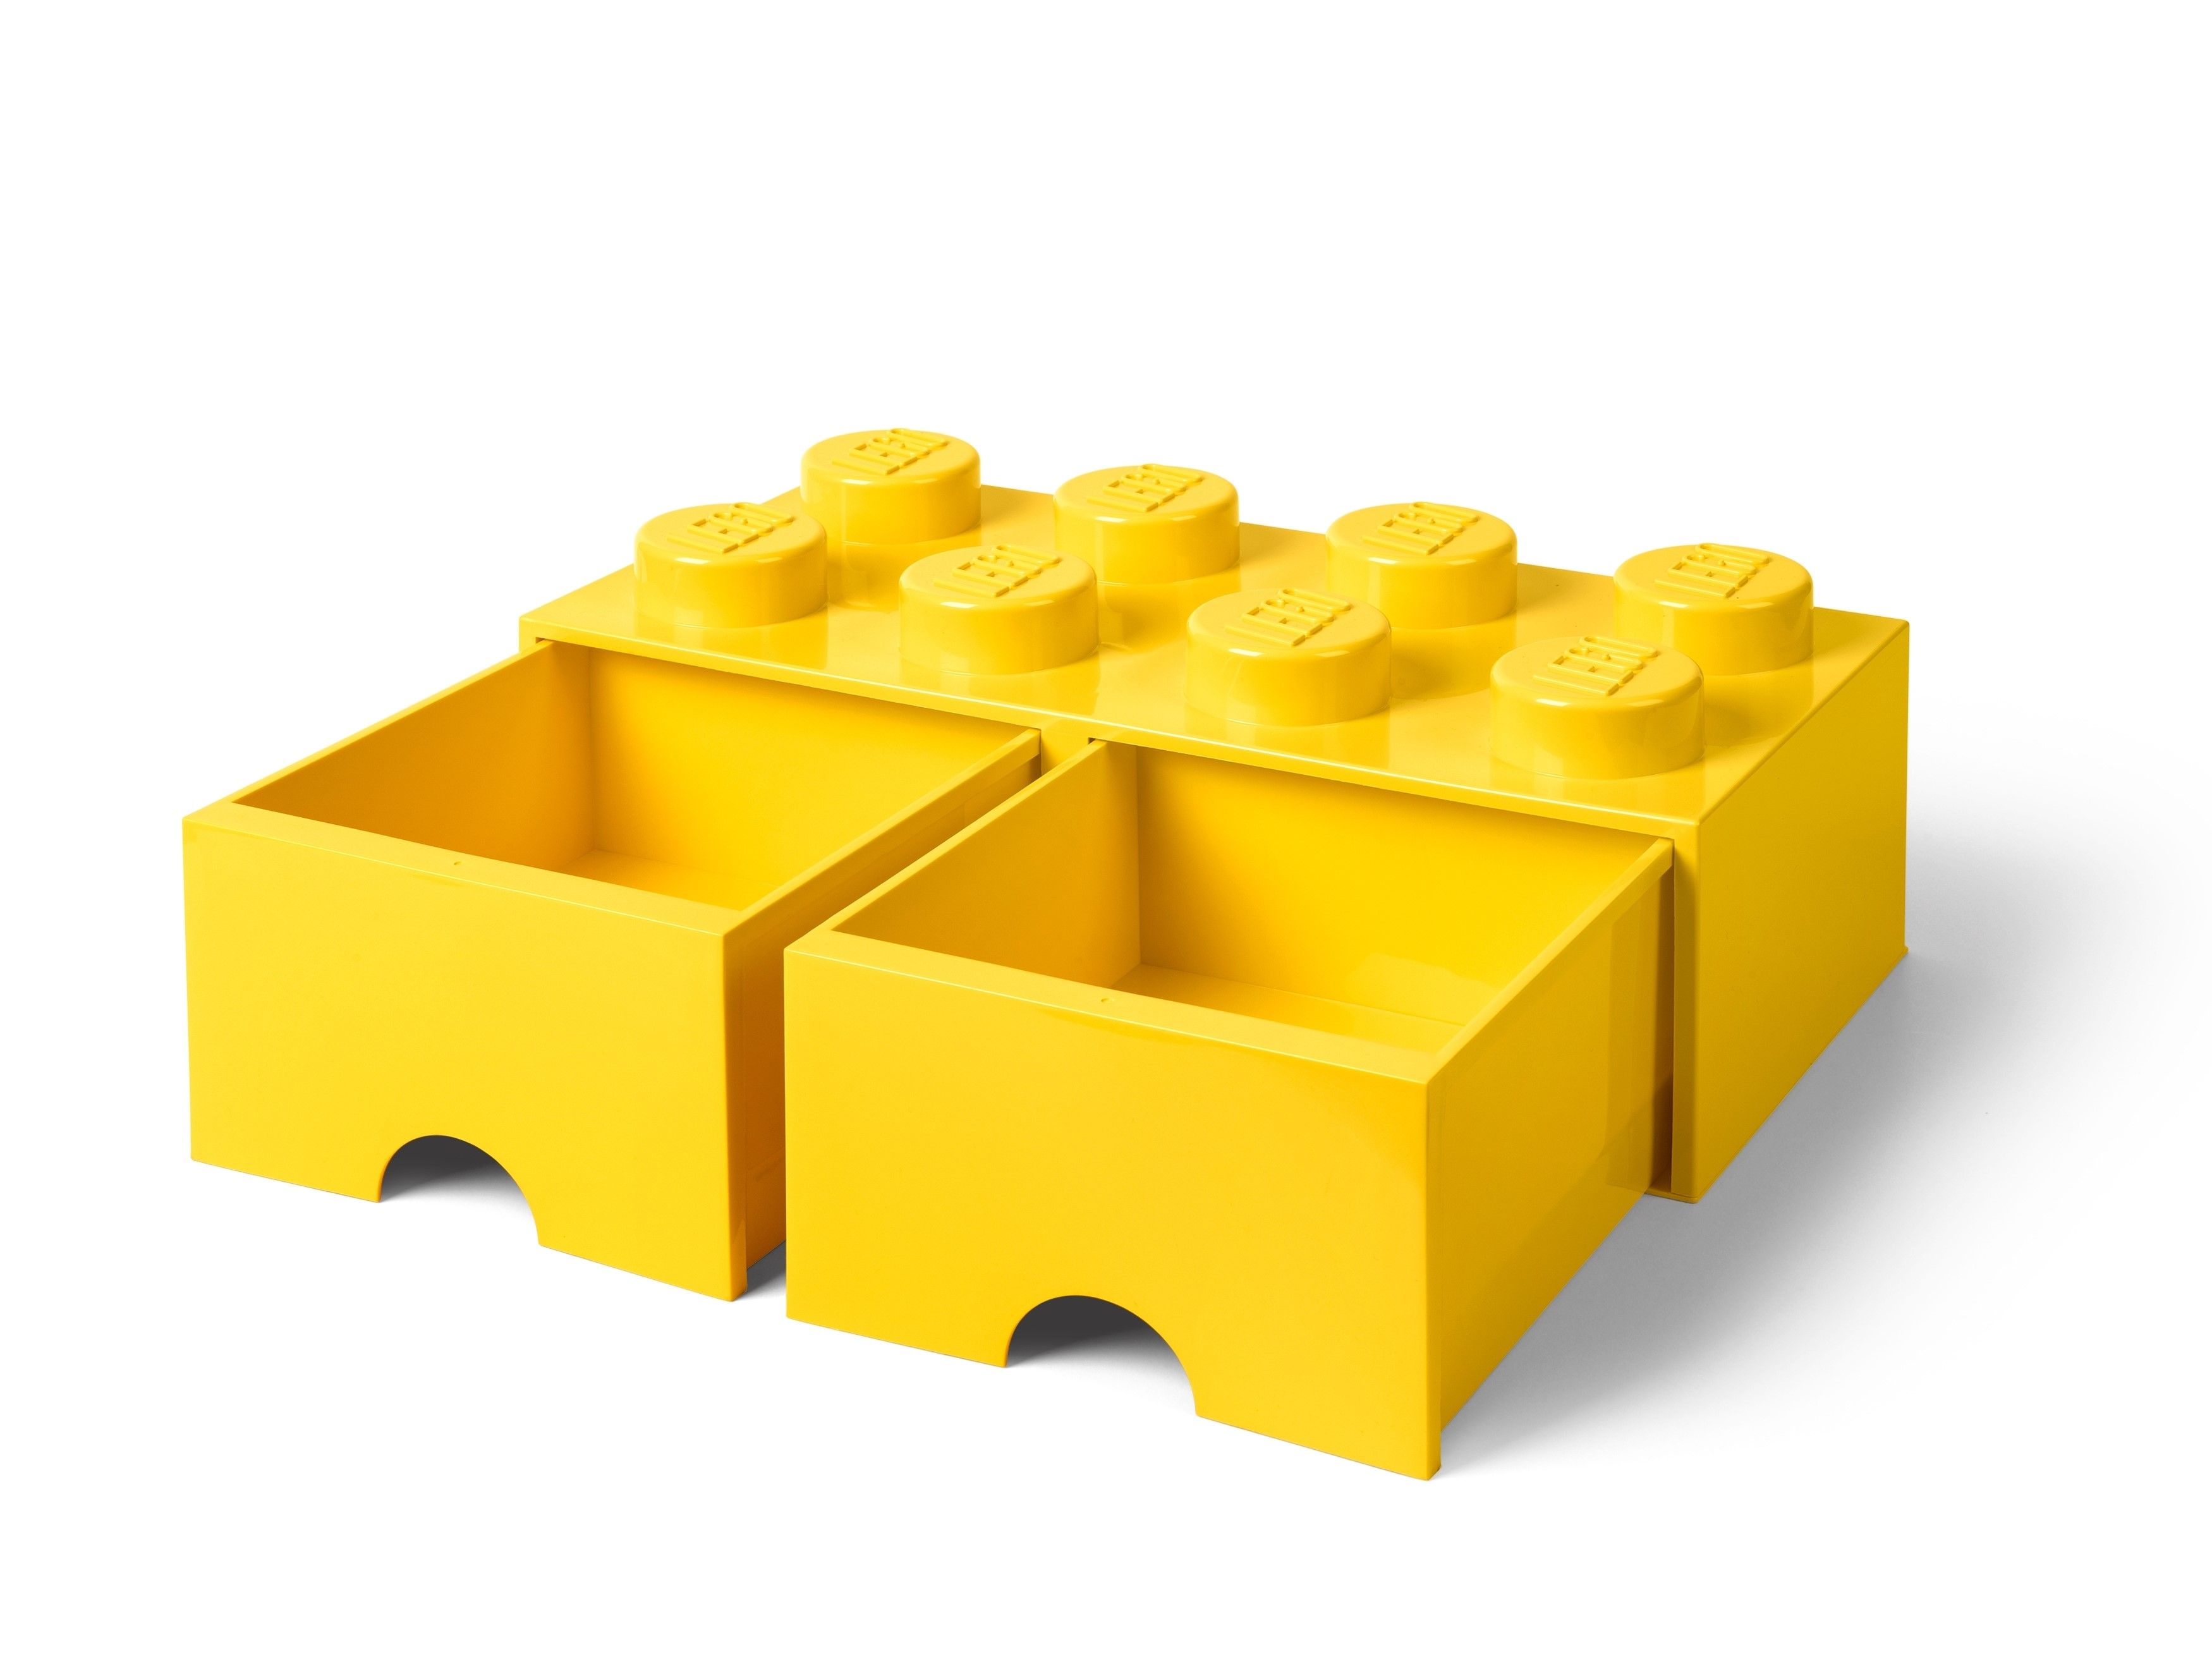 LEGO Gear 5006133 Stein mit 8 Noppen und Schubfächern in Gelb LEGO_5005400_alt1.jpg